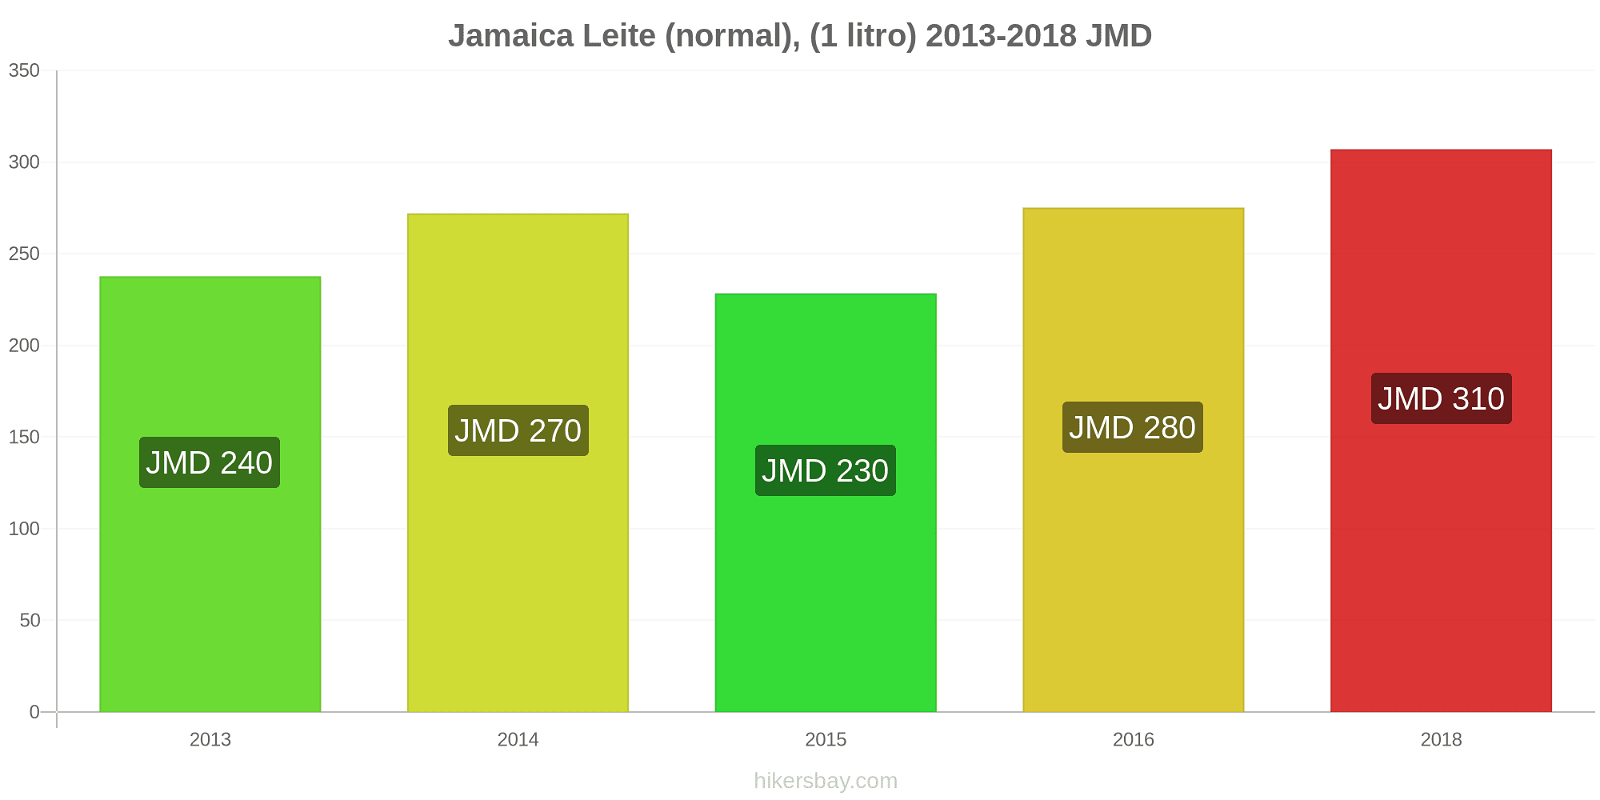 Jamaica variação de preço (Regular), leite (1 litro) hikersbay.com